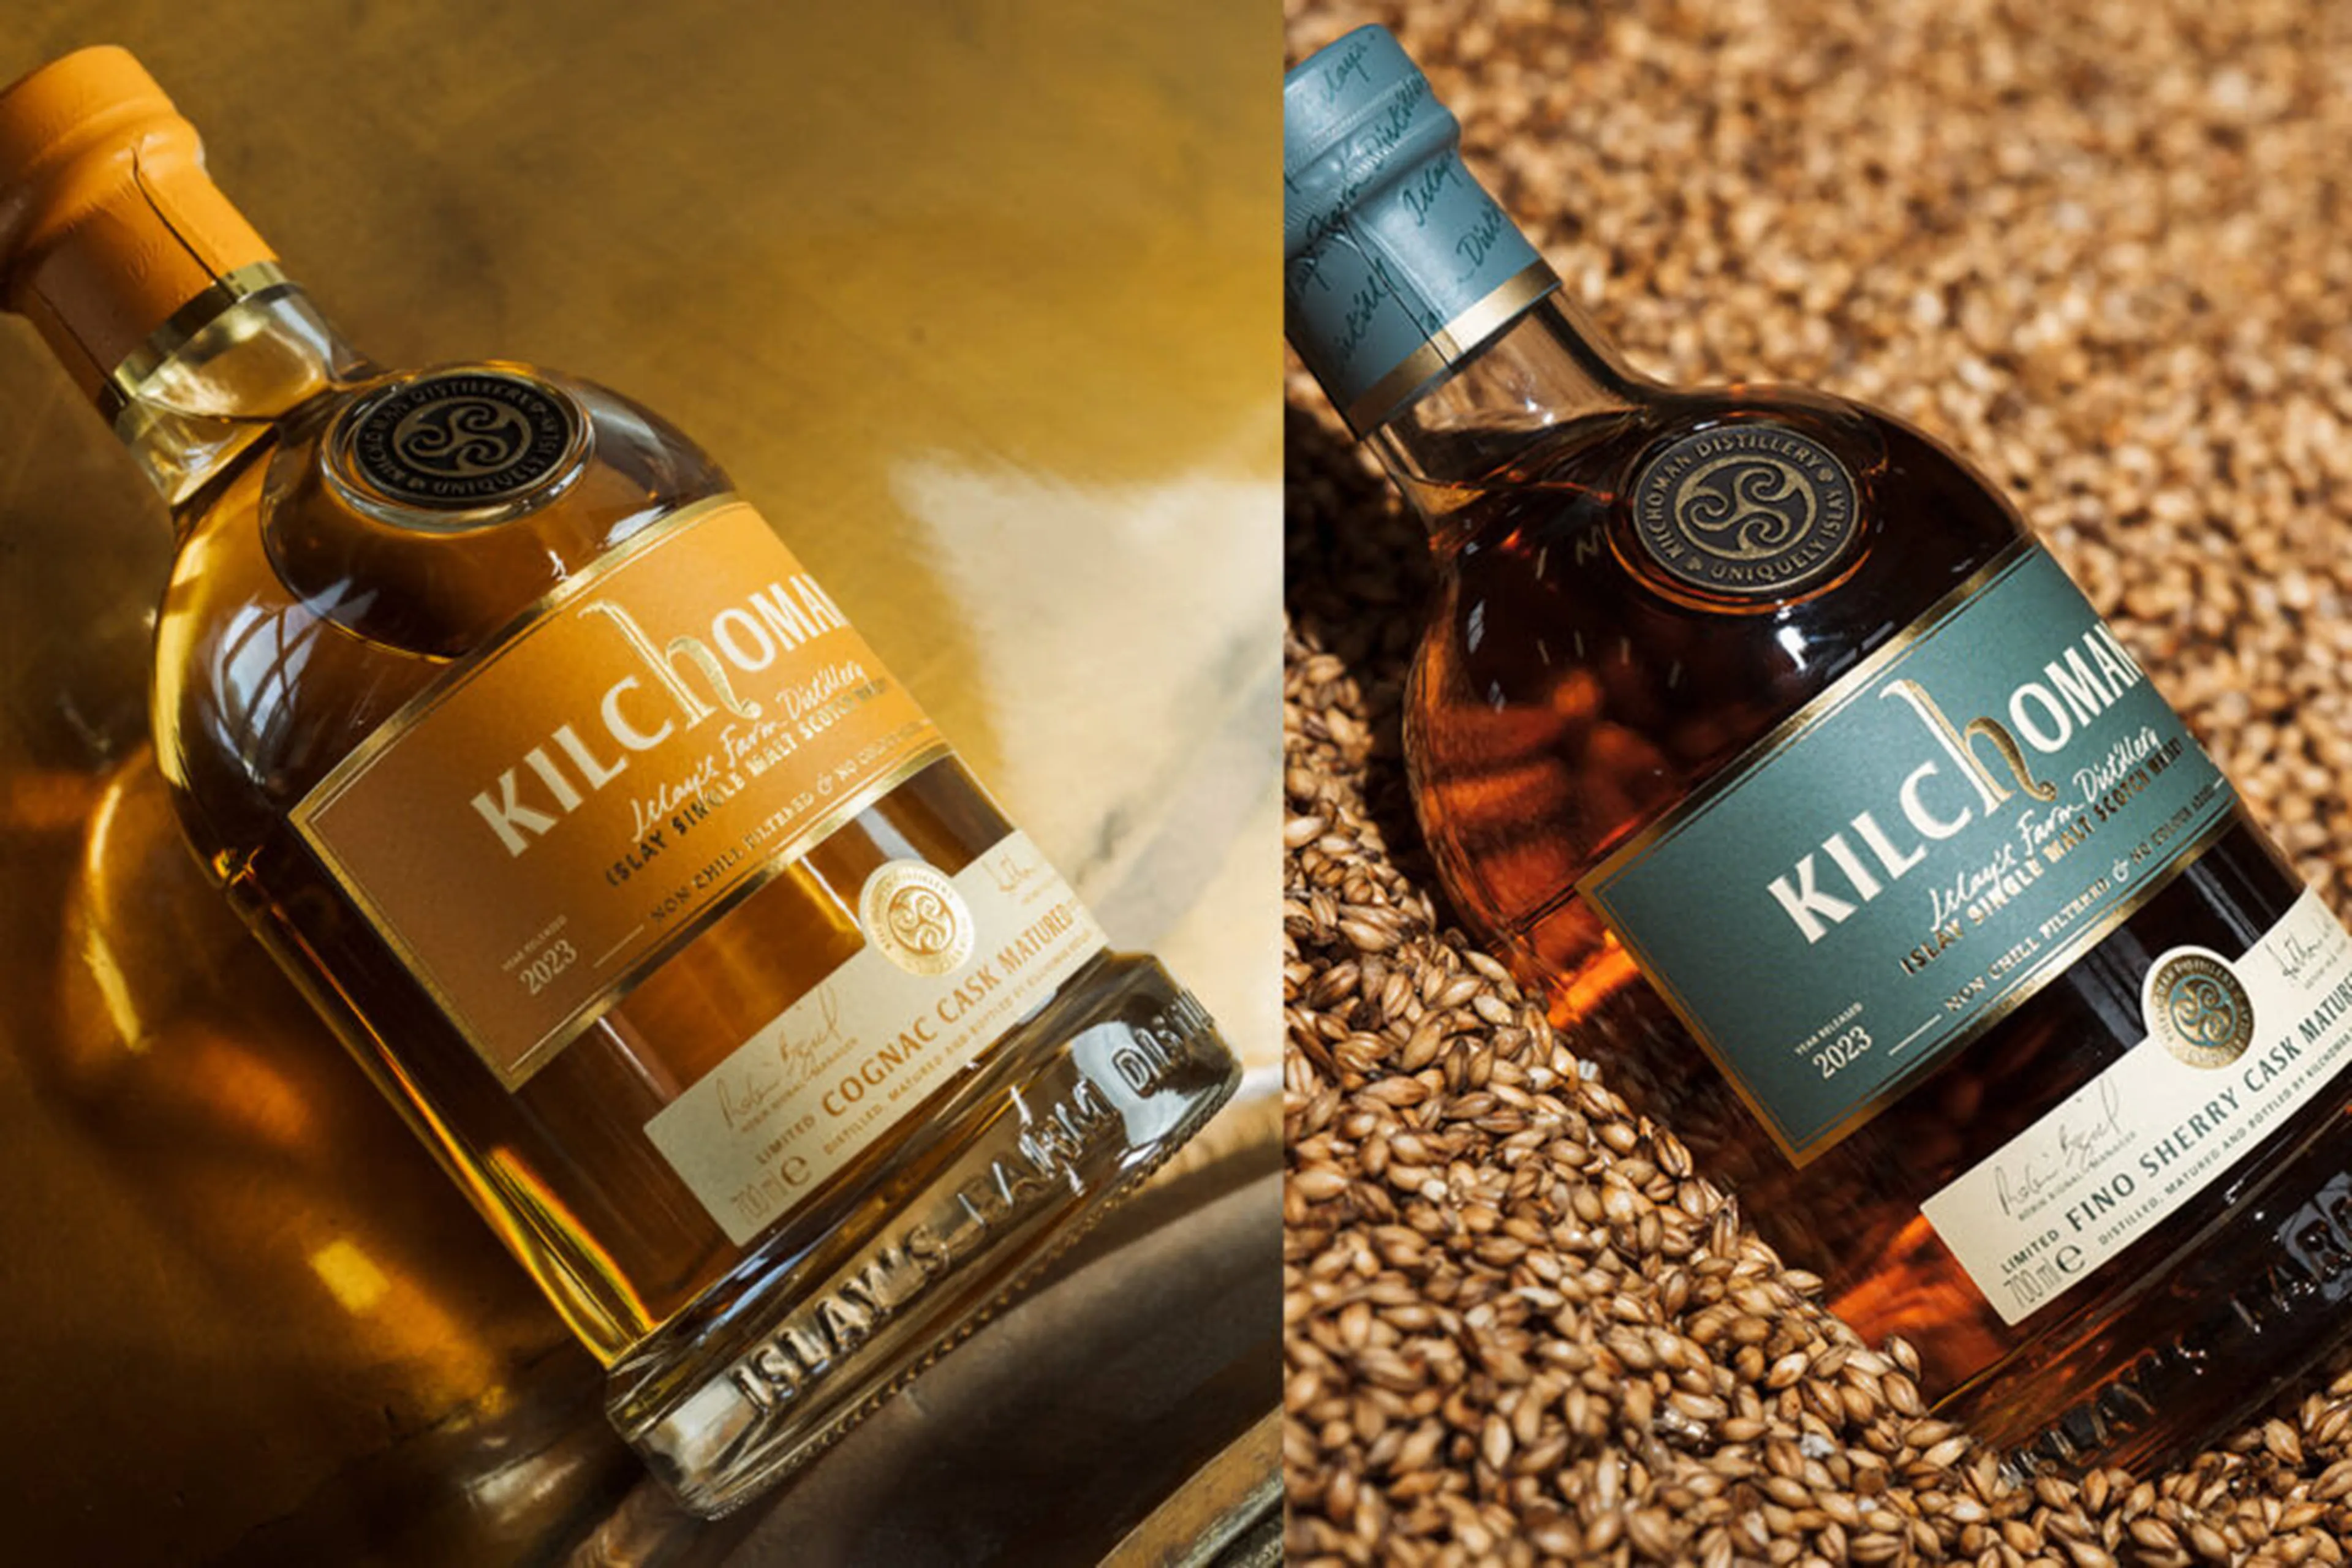 kilchoman cognac matured fino sherry matured whisky